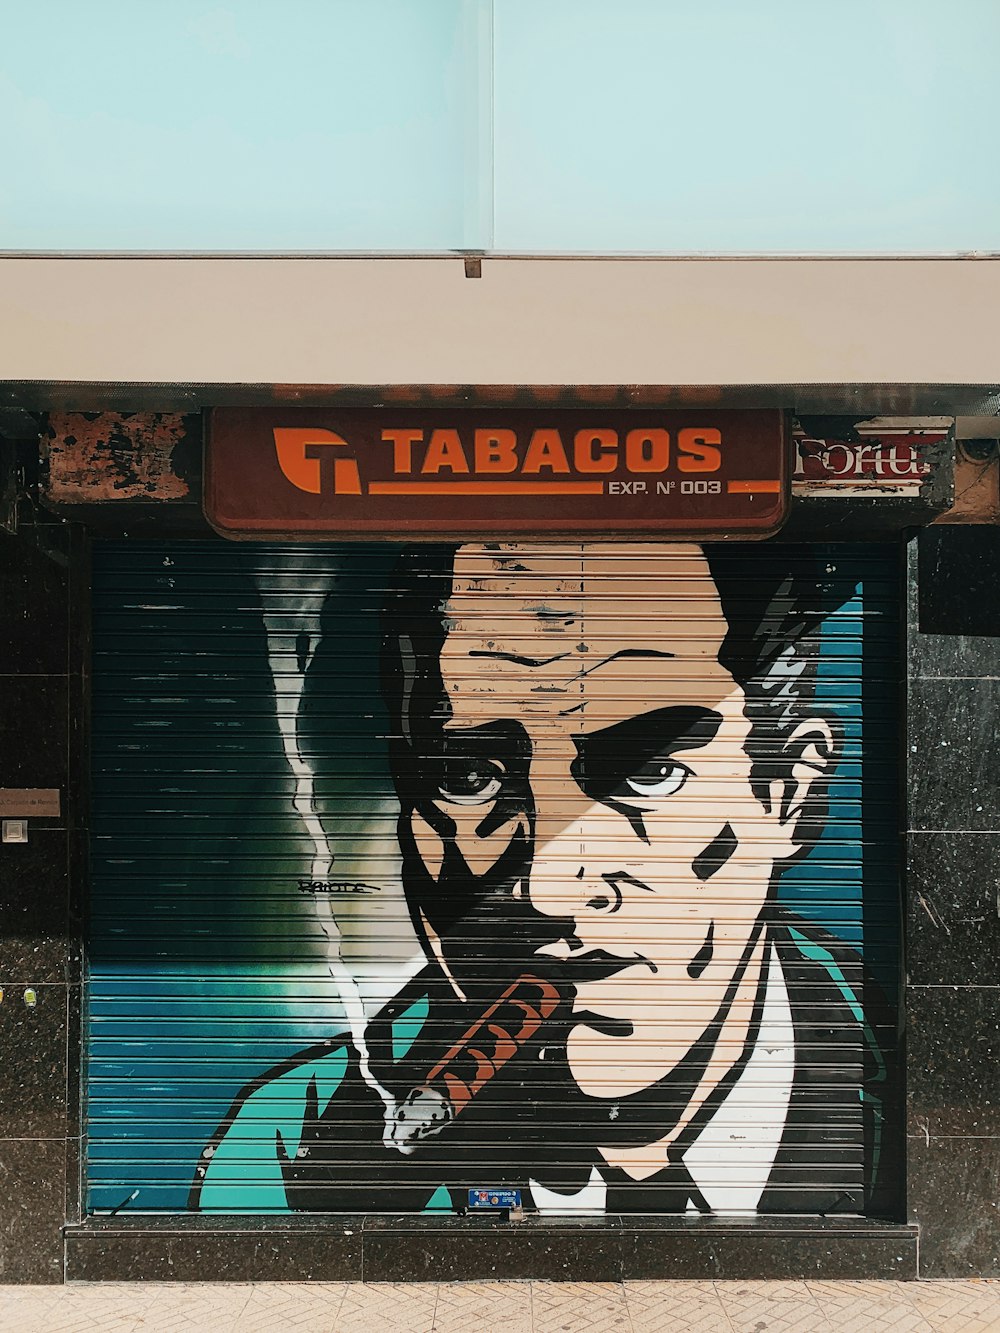 Tabacos signage